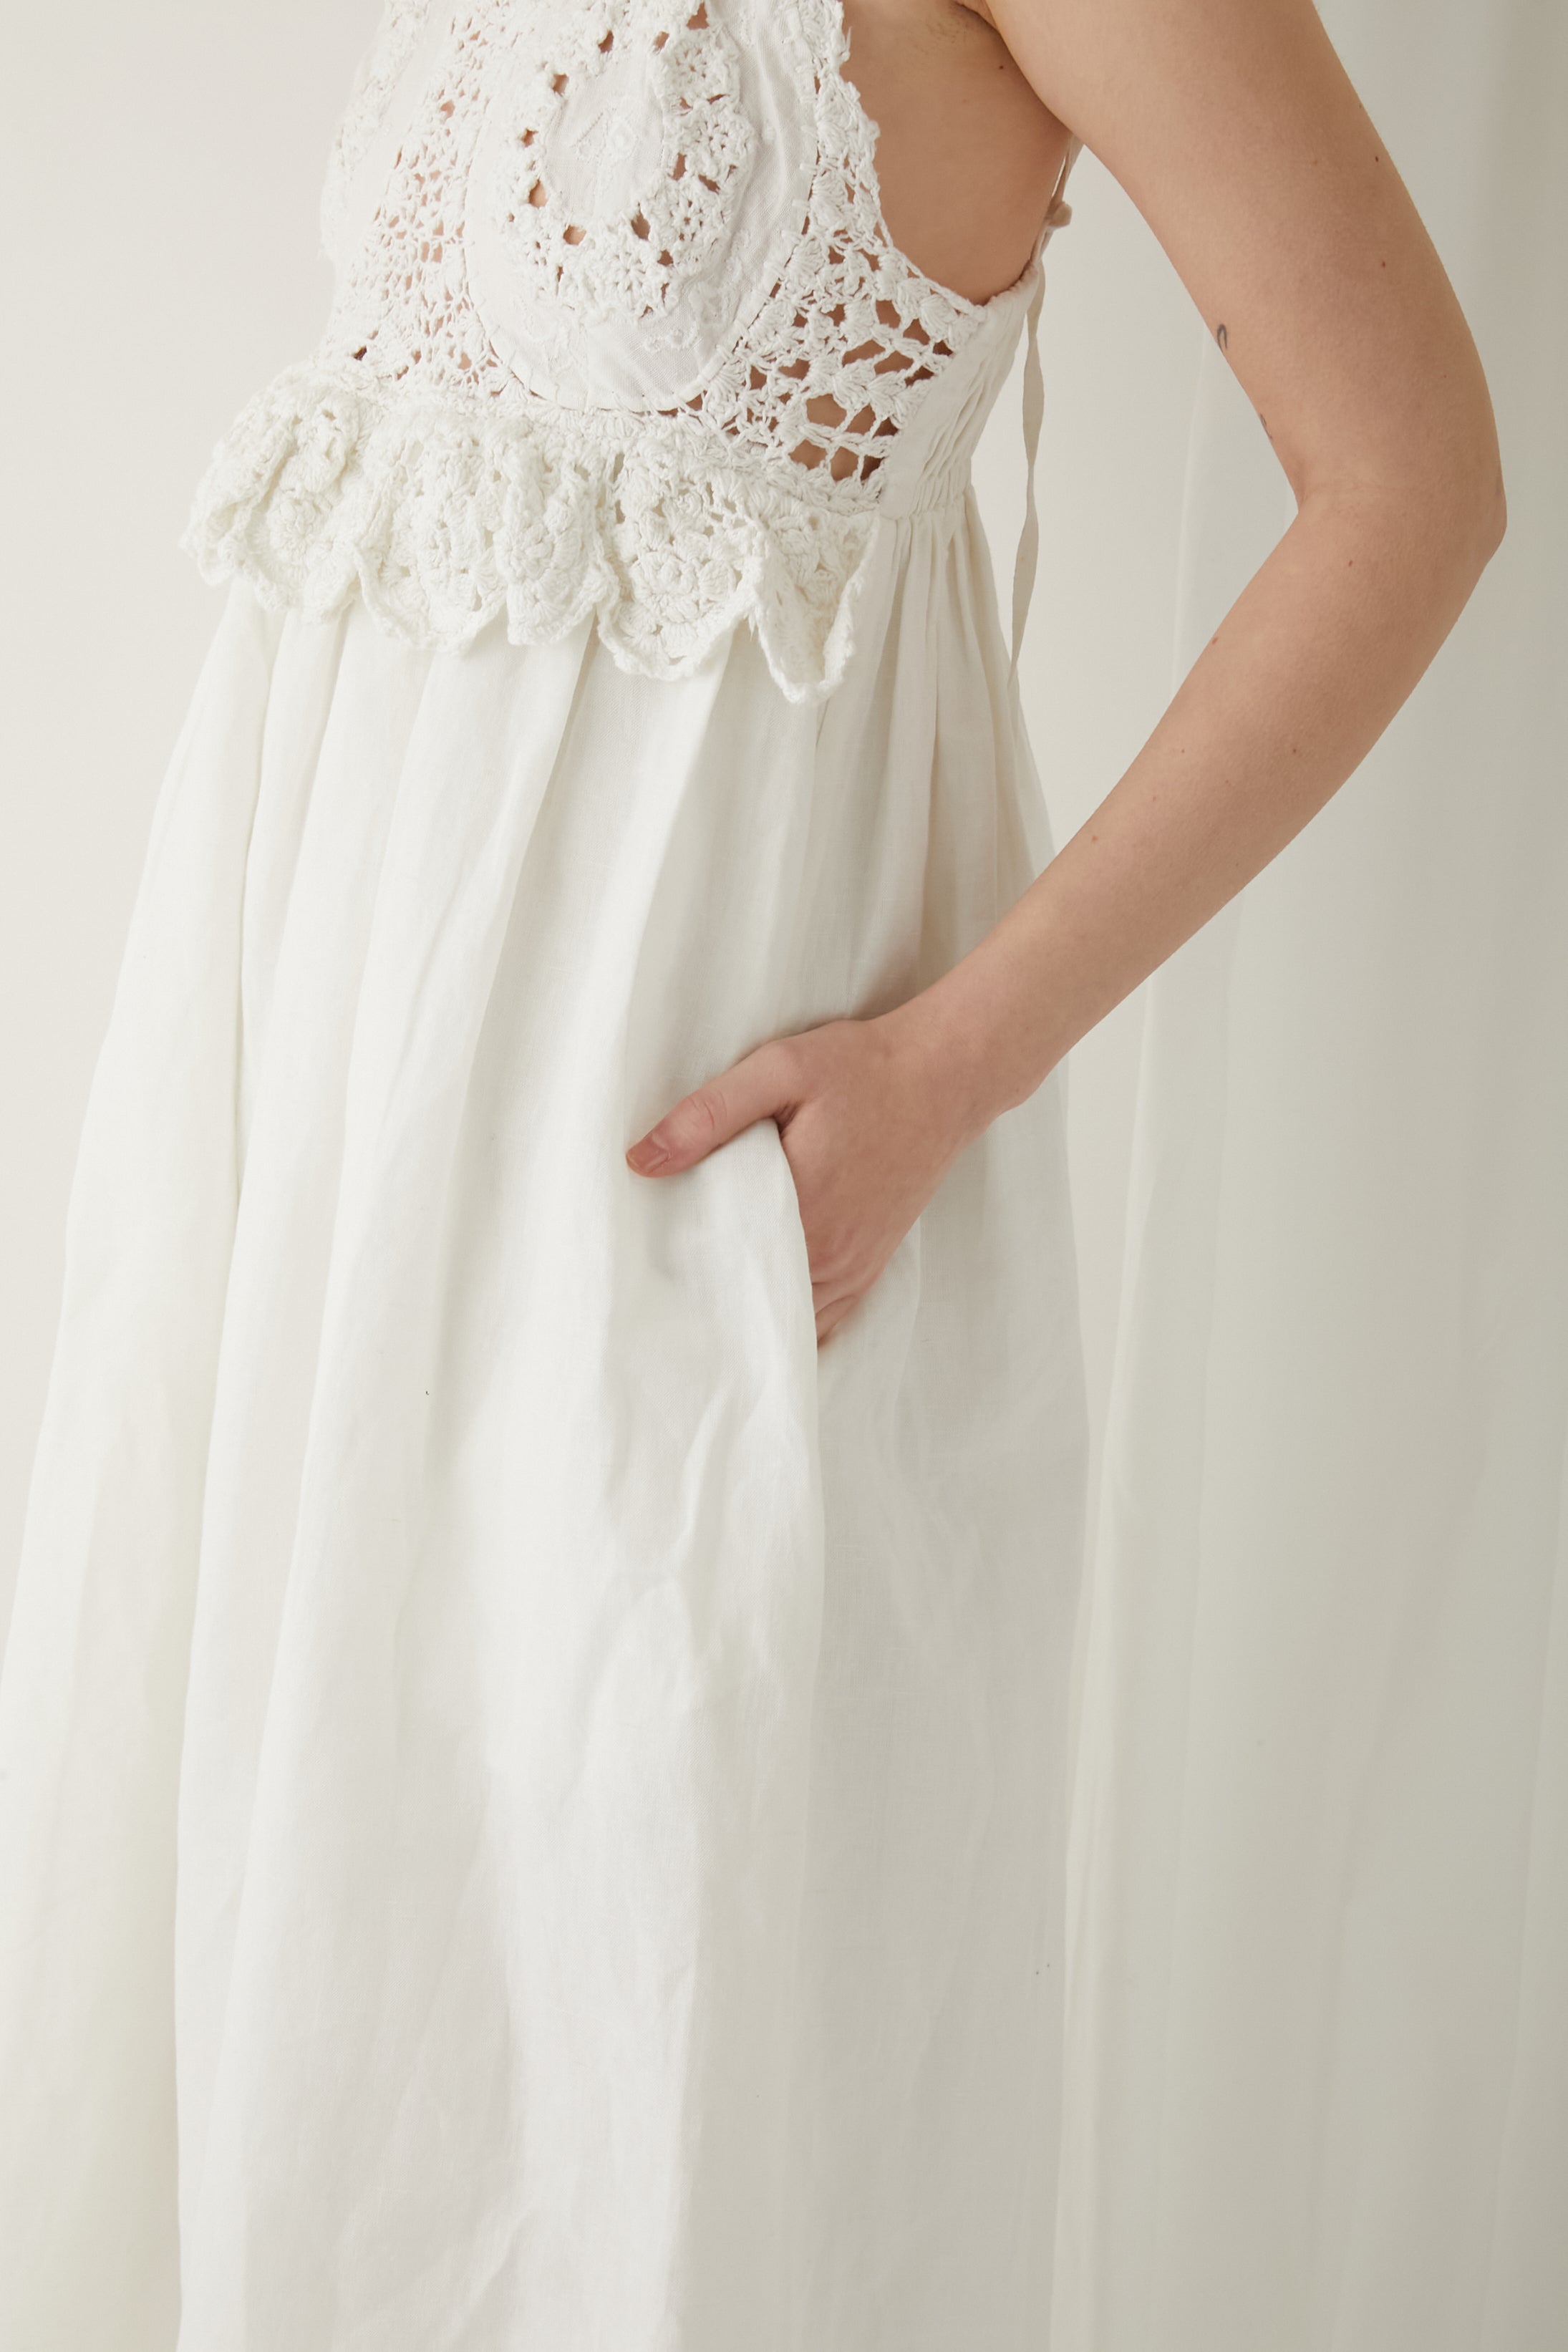 hand crochet dress │ WHITE